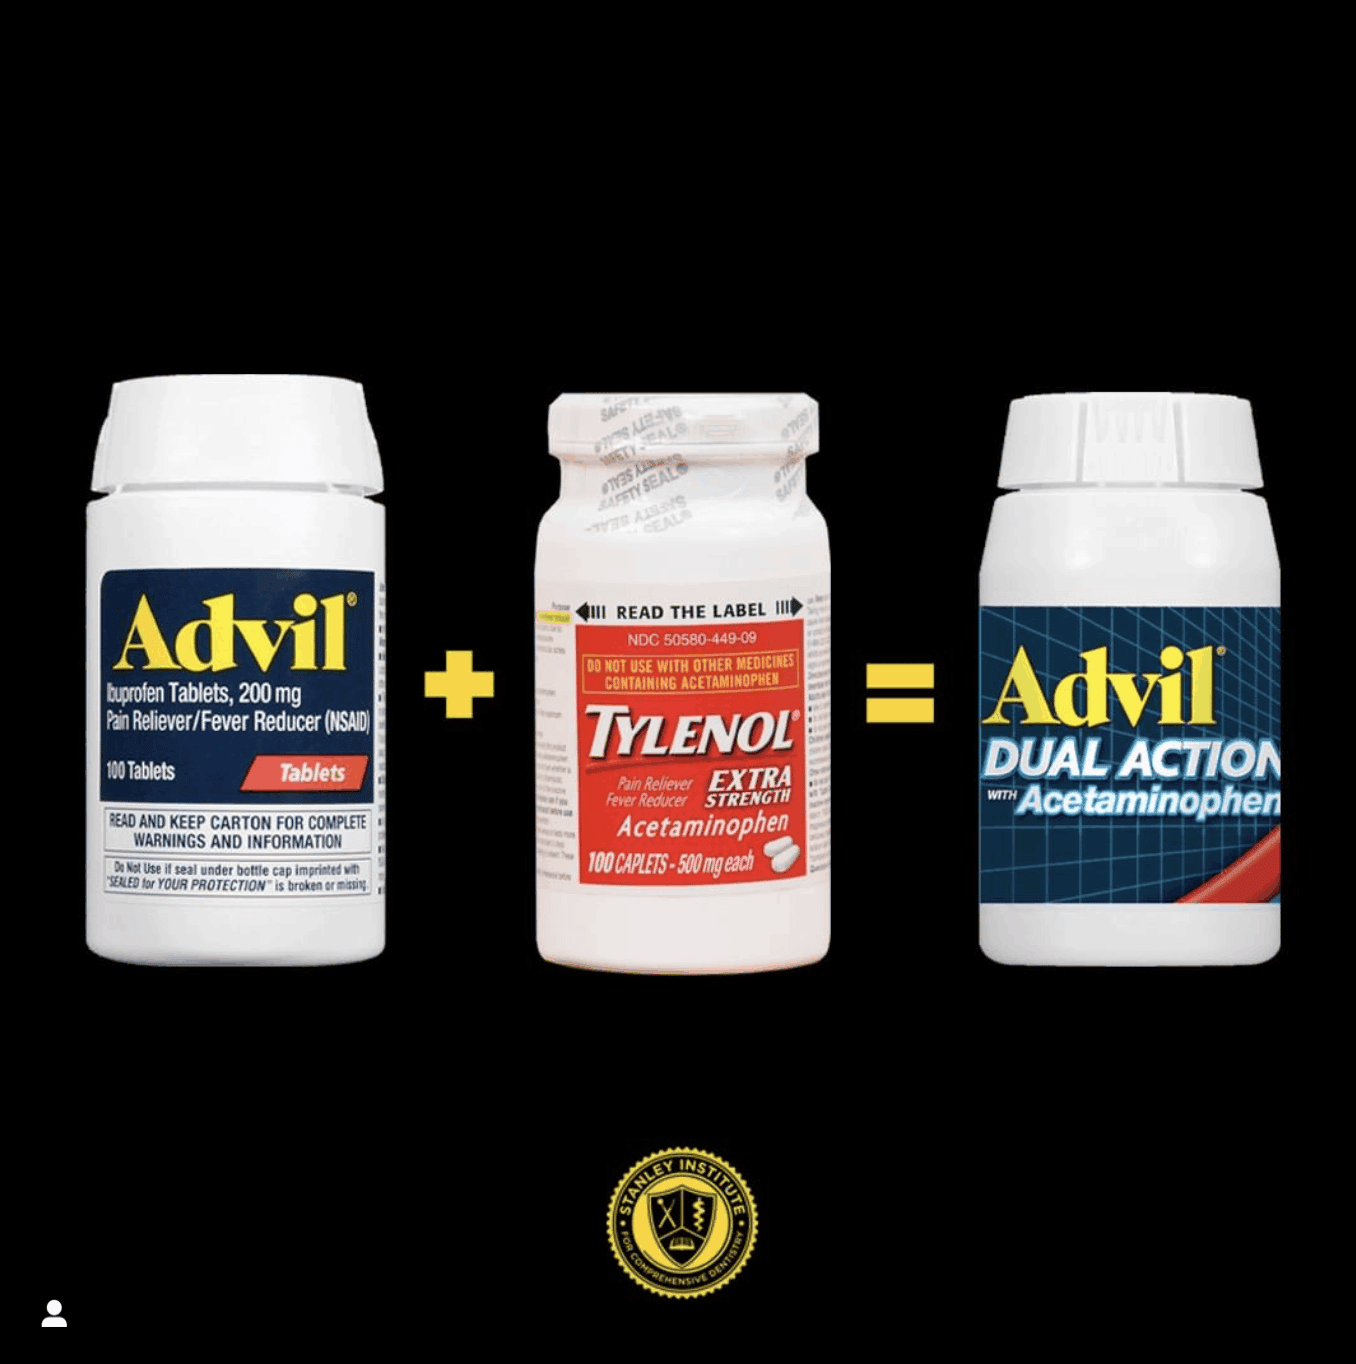 New Advil + Acetaminophen medication